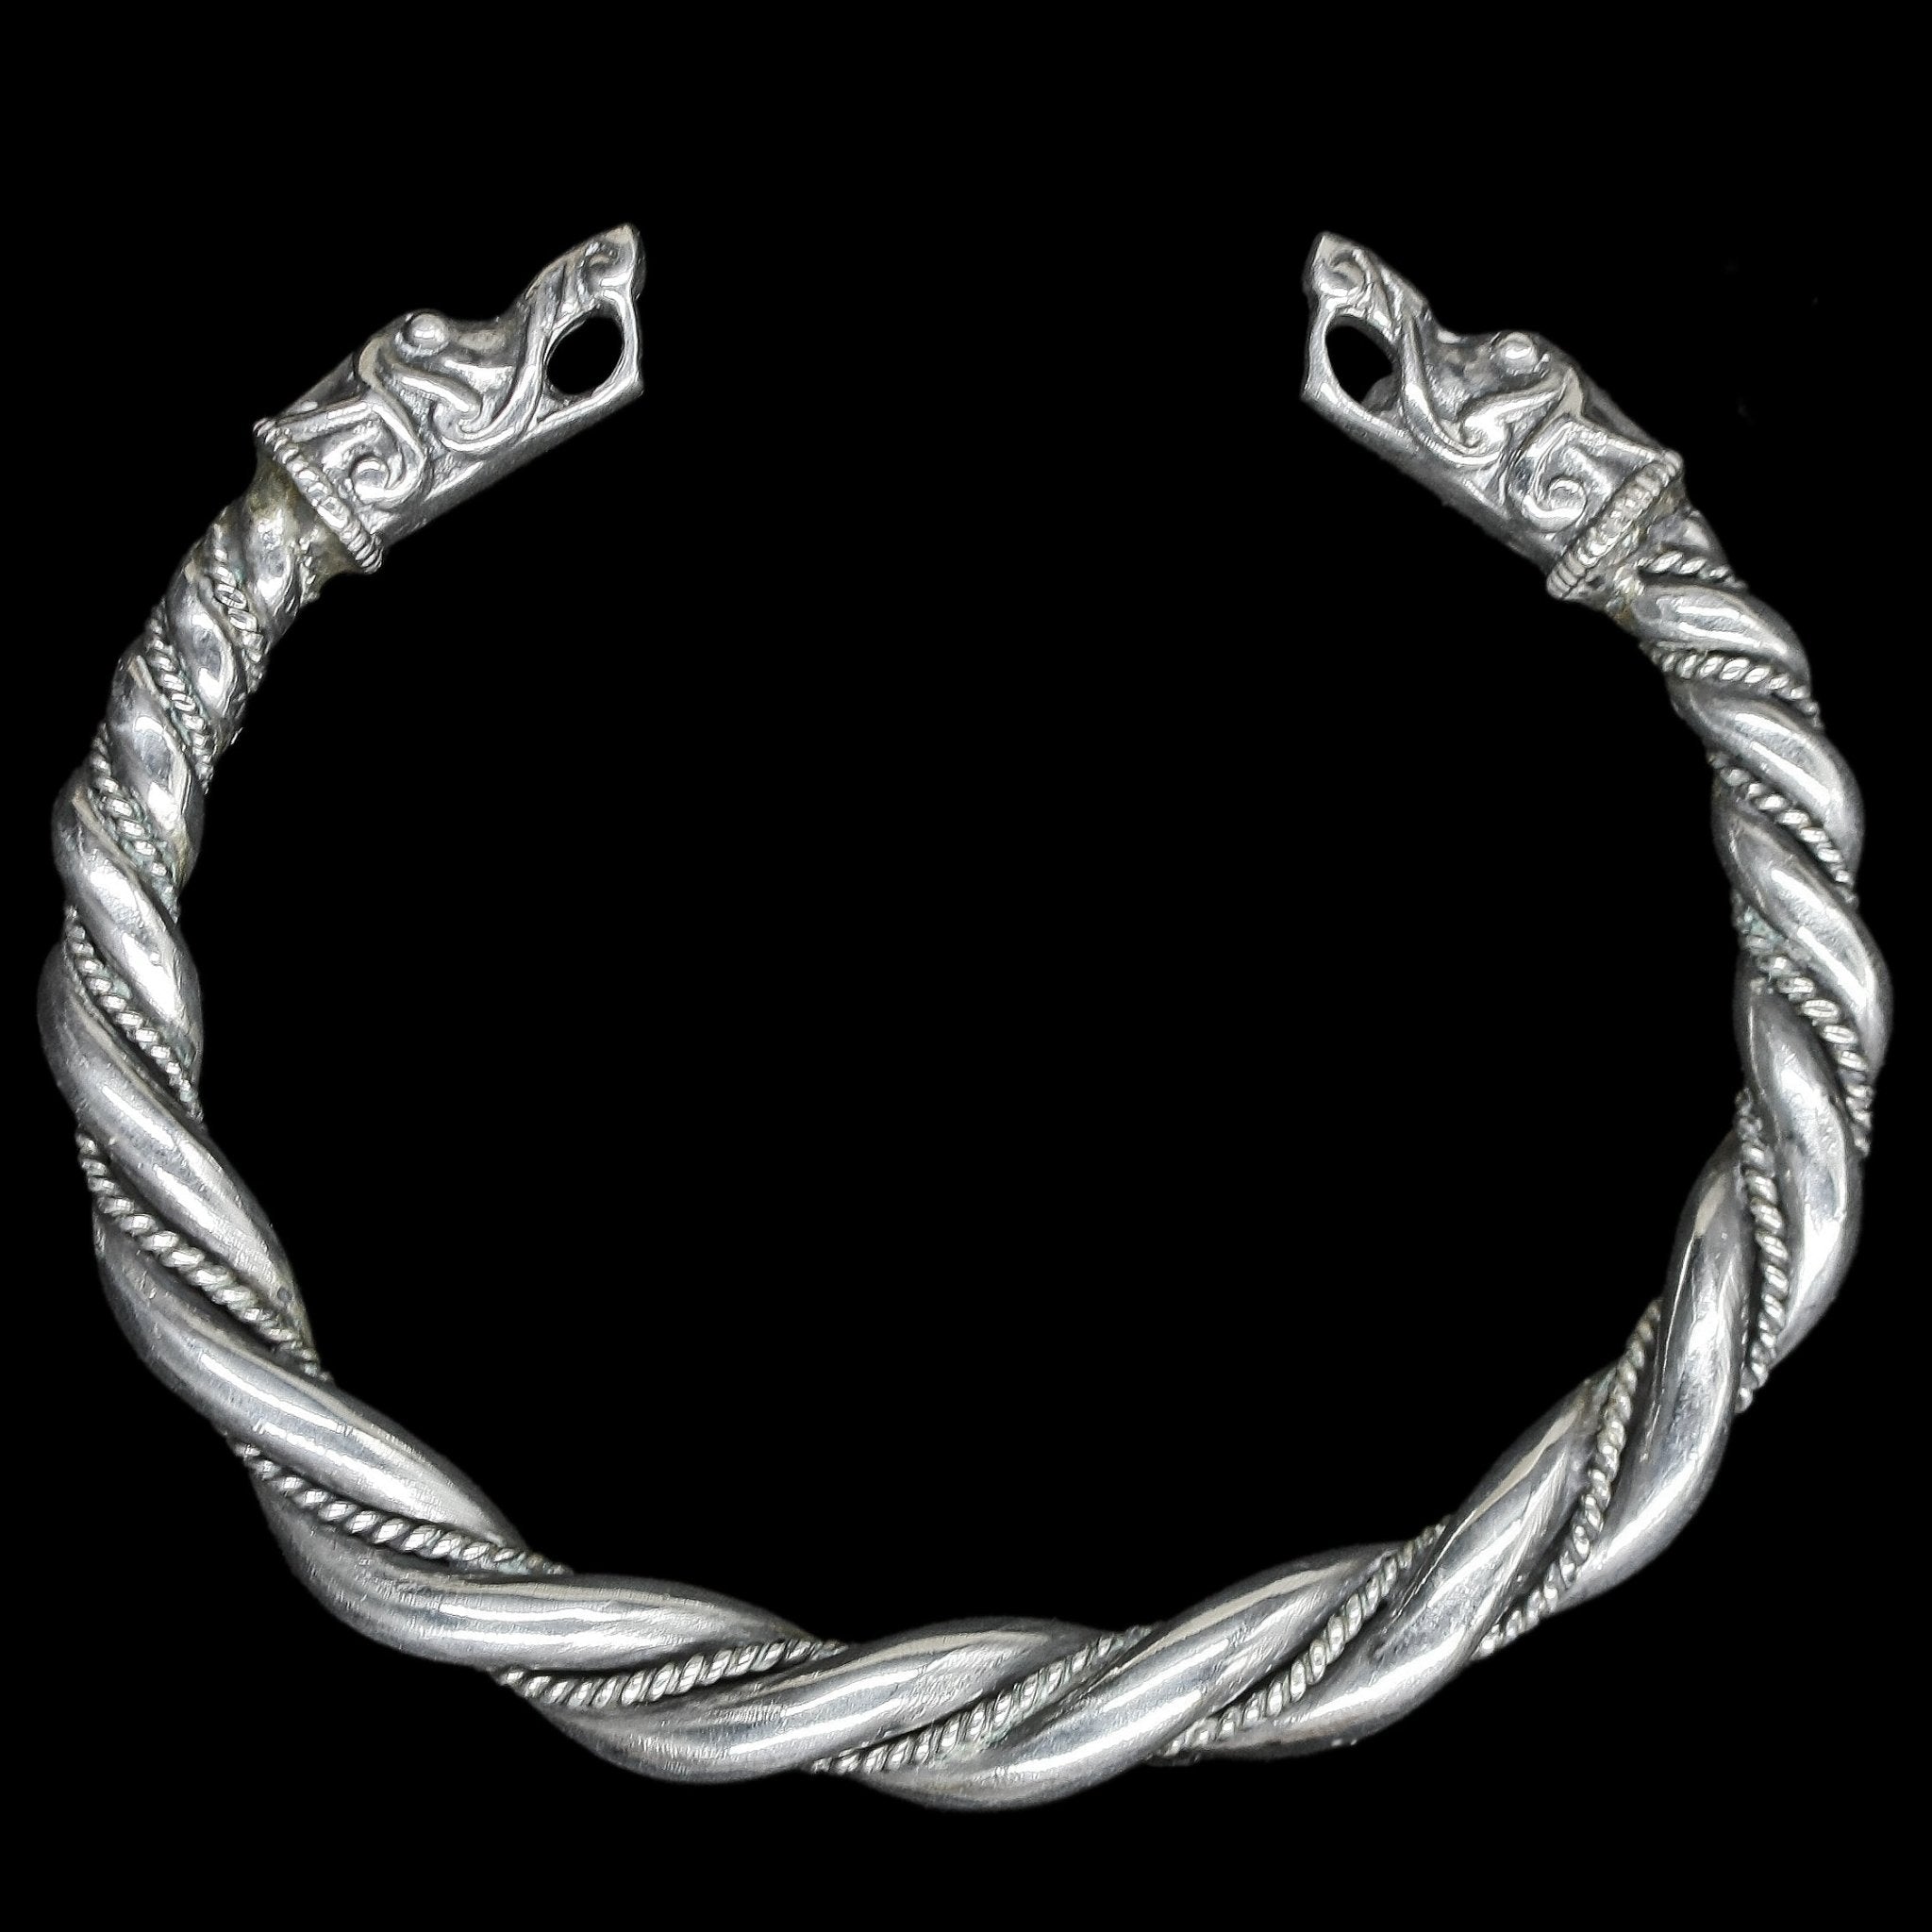 Medium Twisted Silver Arm Ring With Gotlandic Dragon Heads